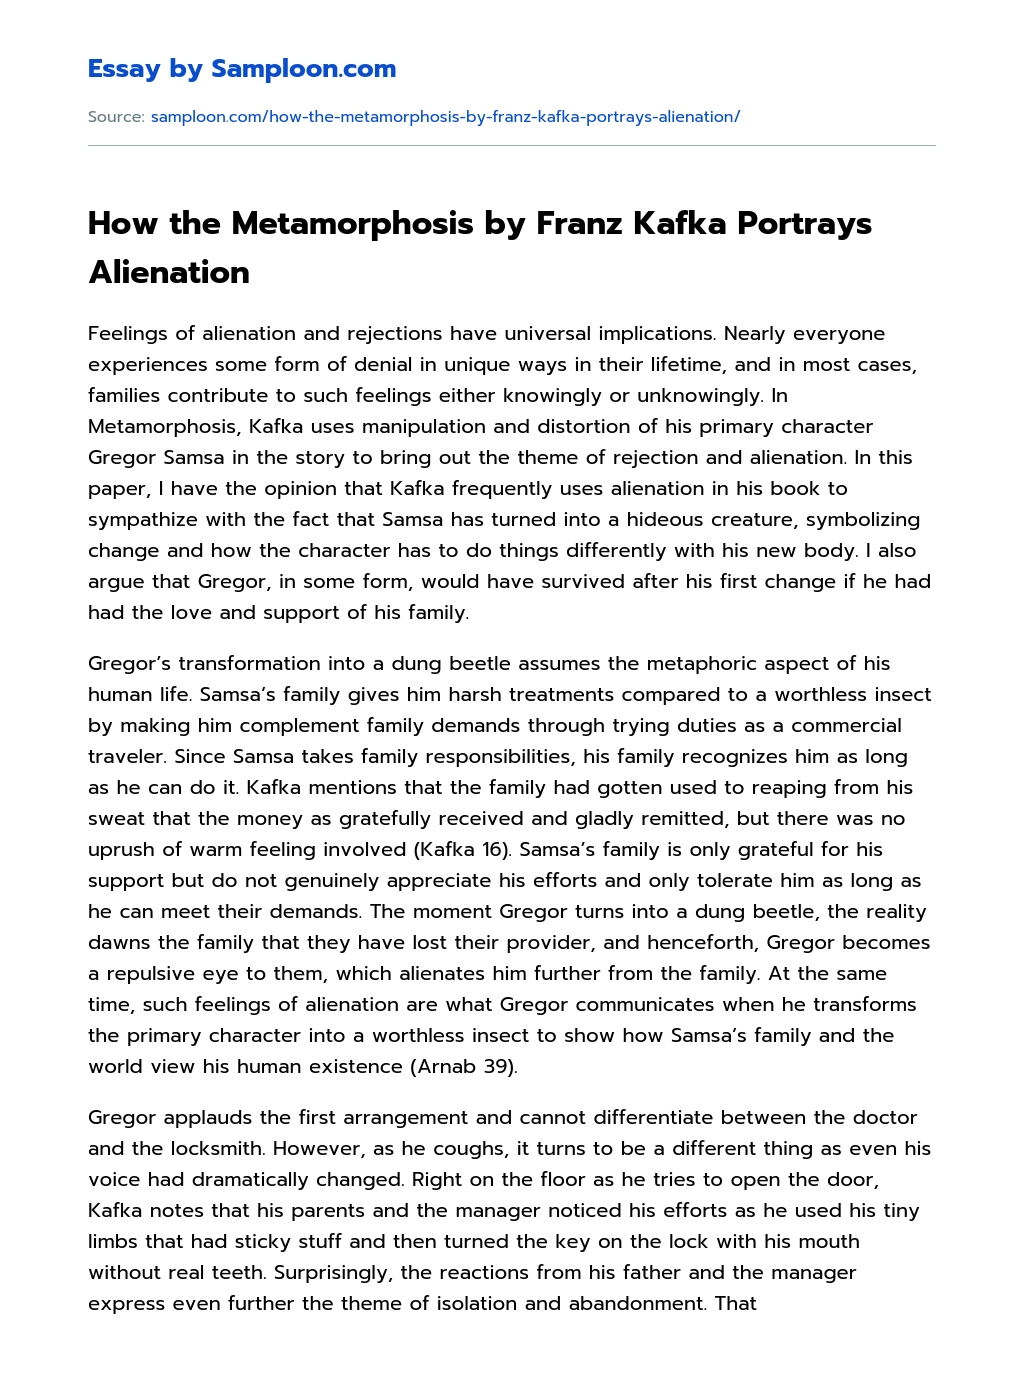 How the Metamorphosis by Franz Kafka Portrays Alienation essay